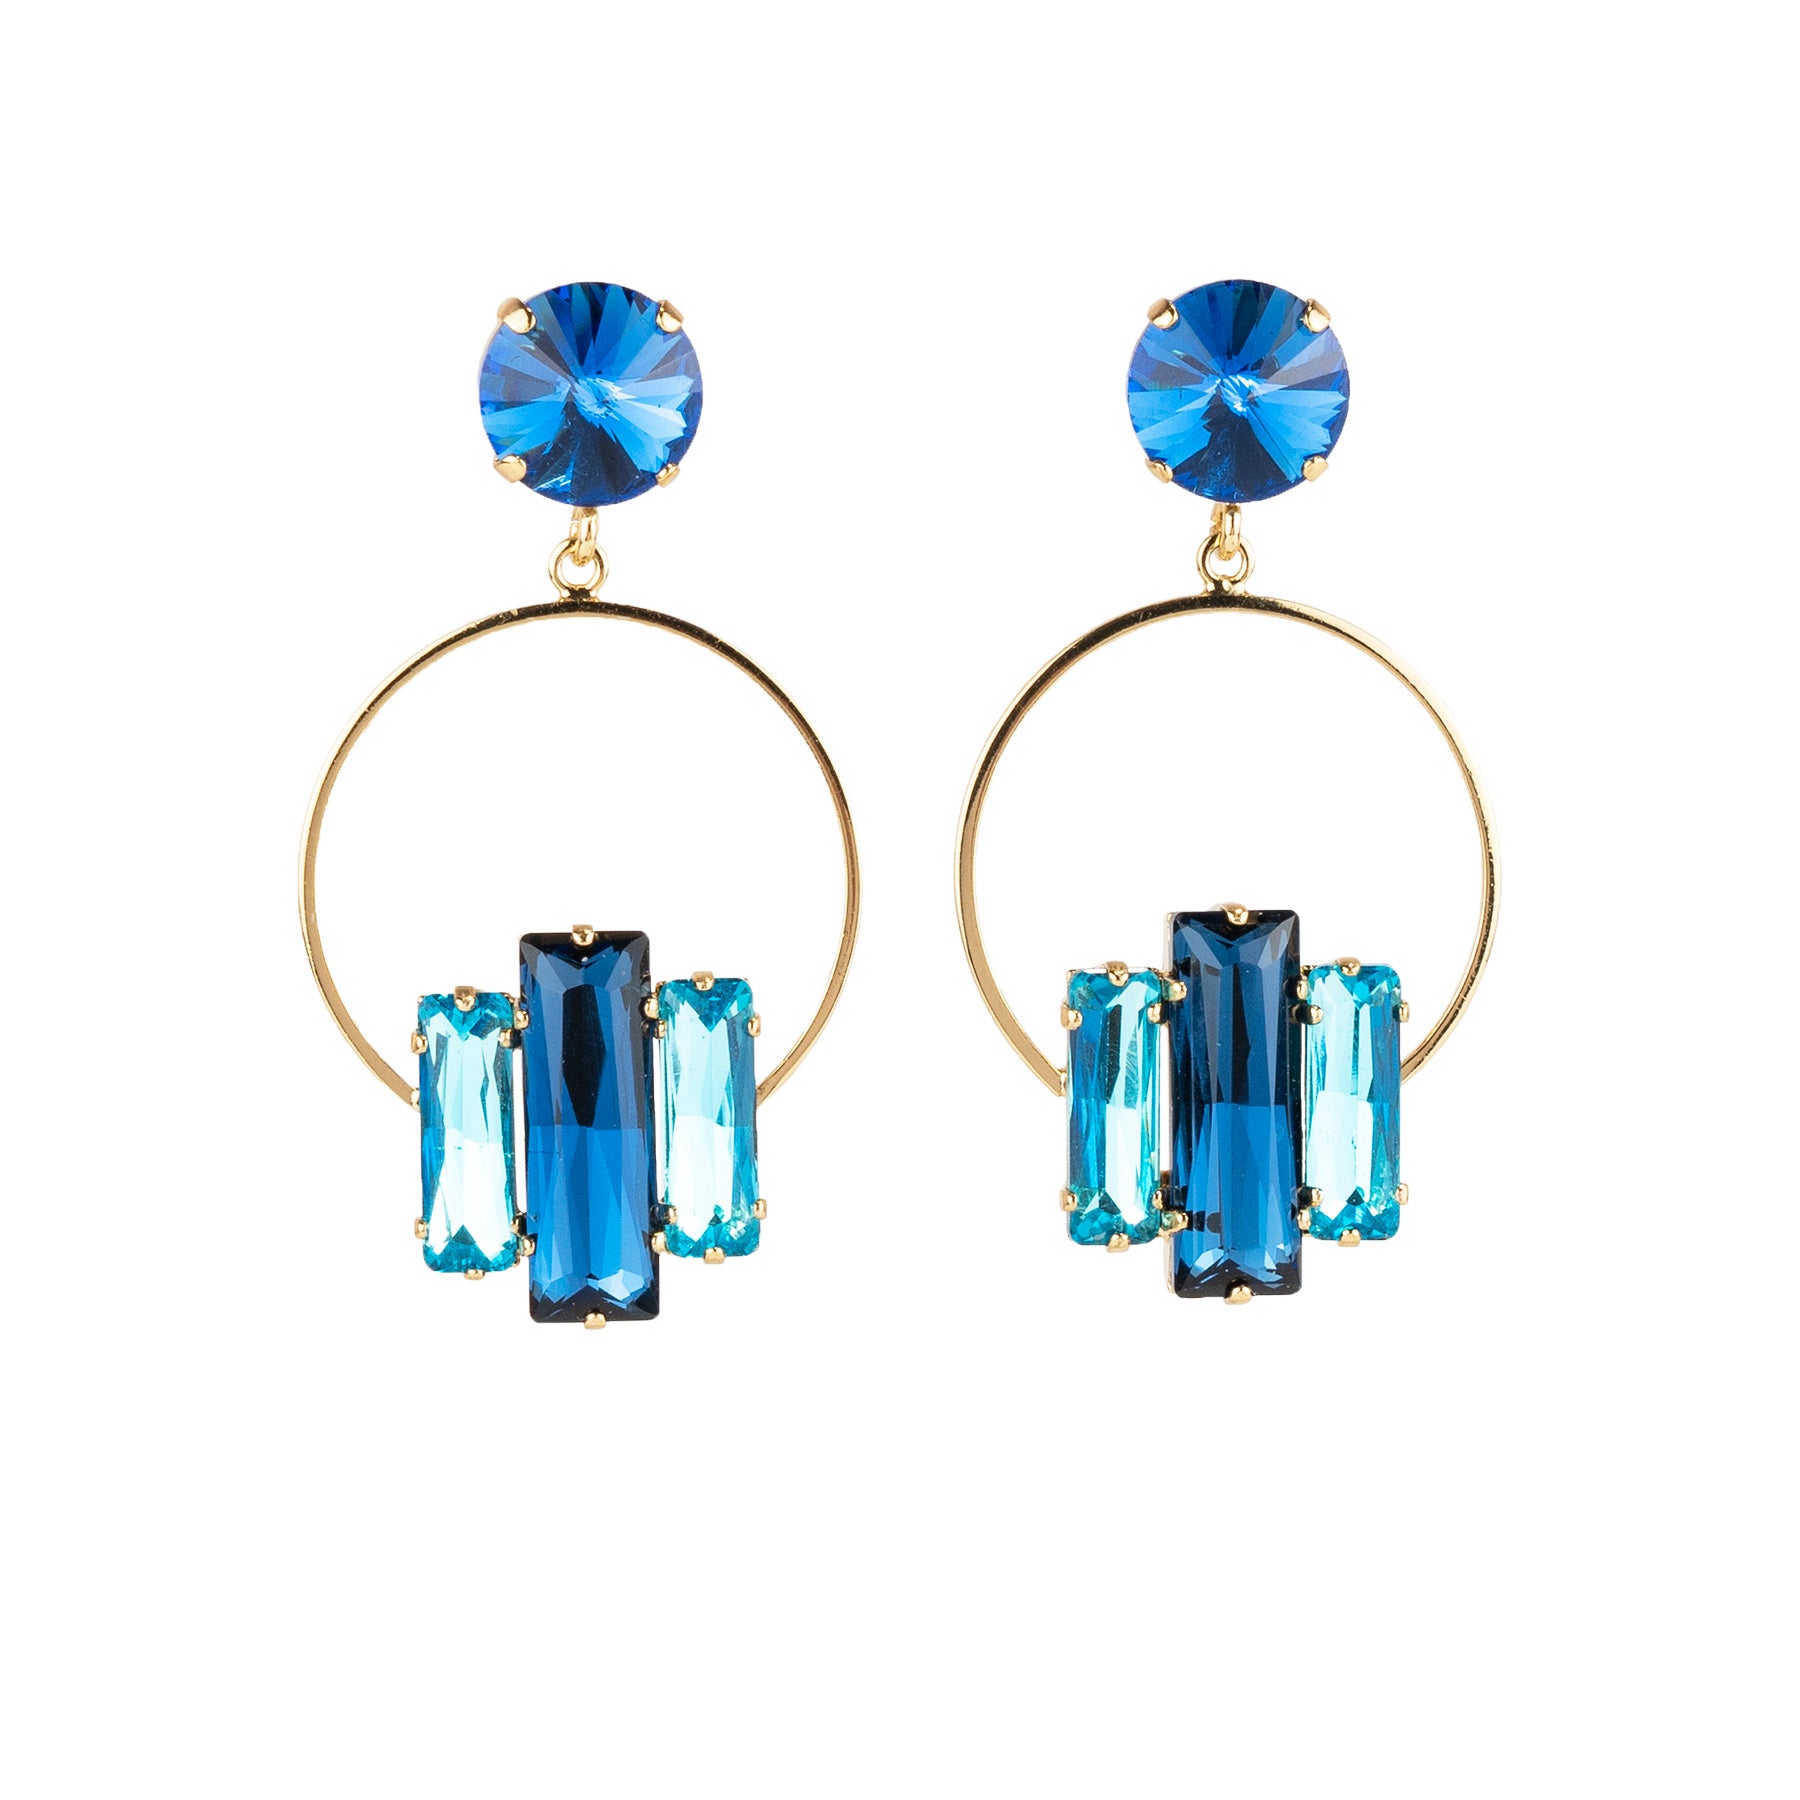 Hoop dangle earrings with crystals